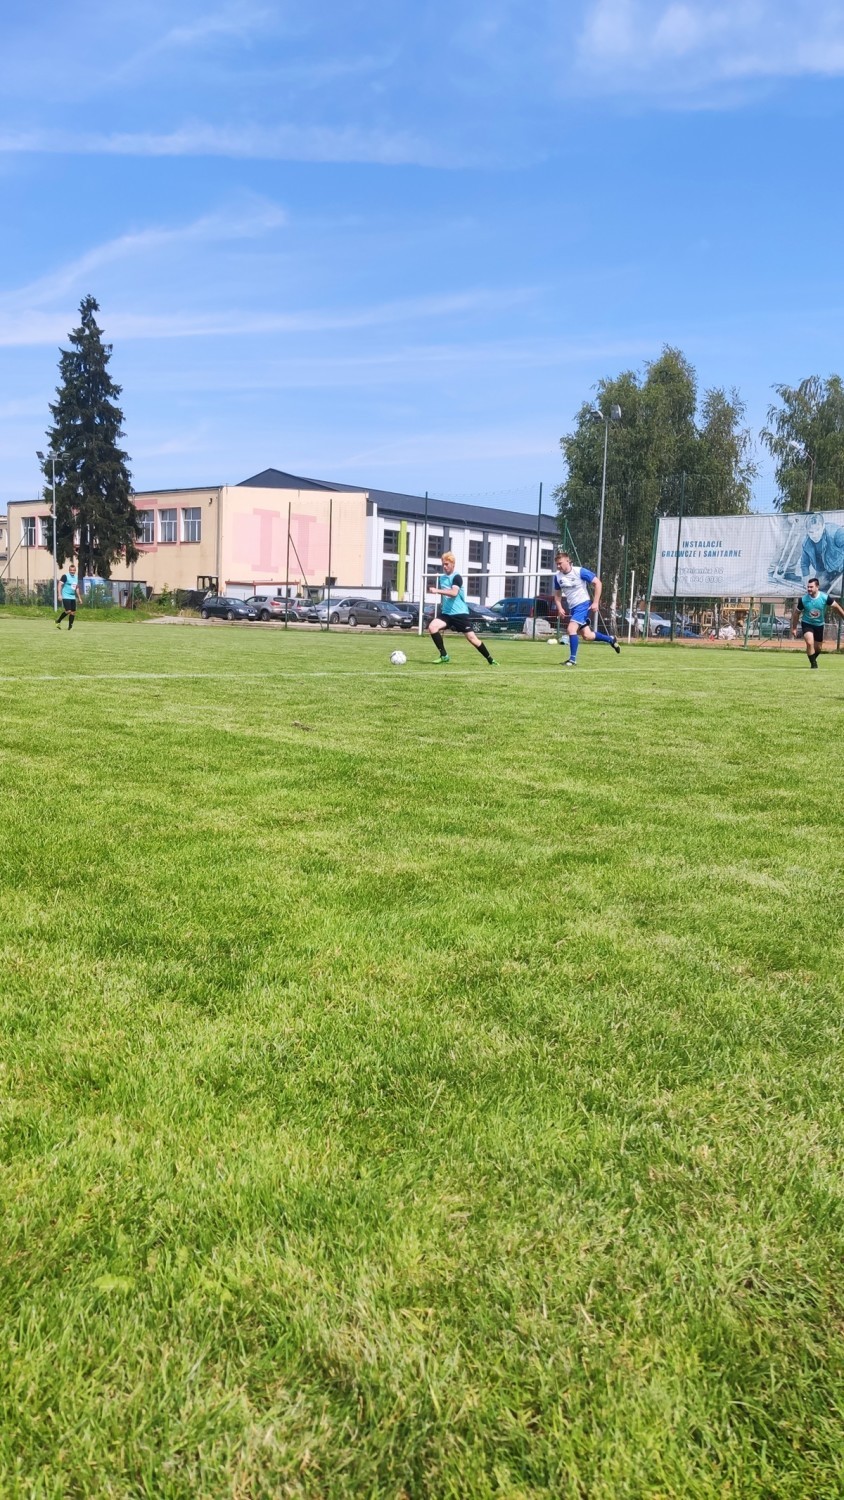 Turniej Służb Mundurowych woj. lubelskiego w piłkę nożną. Zobacz zdjęcia z turnieju w Dzierzkowicach